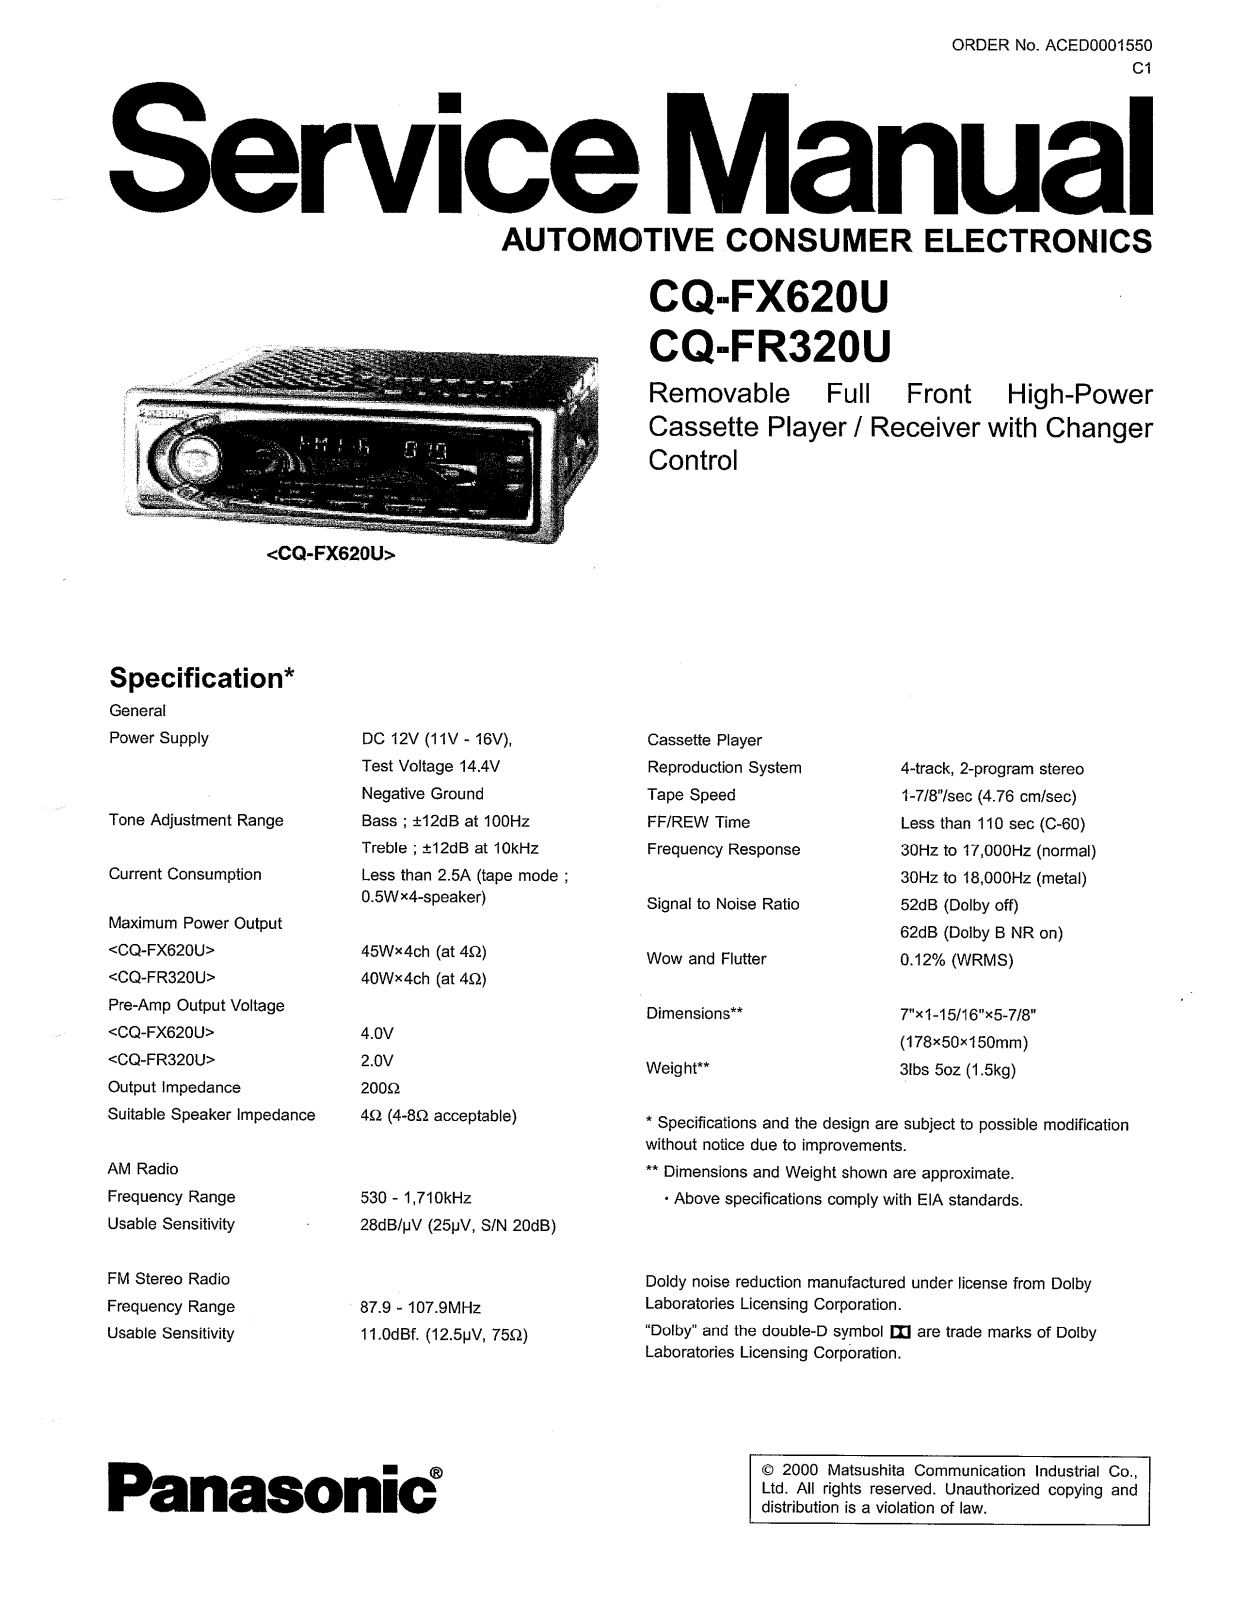 Panasonic CQFR-320, CQFX-620 Service manual